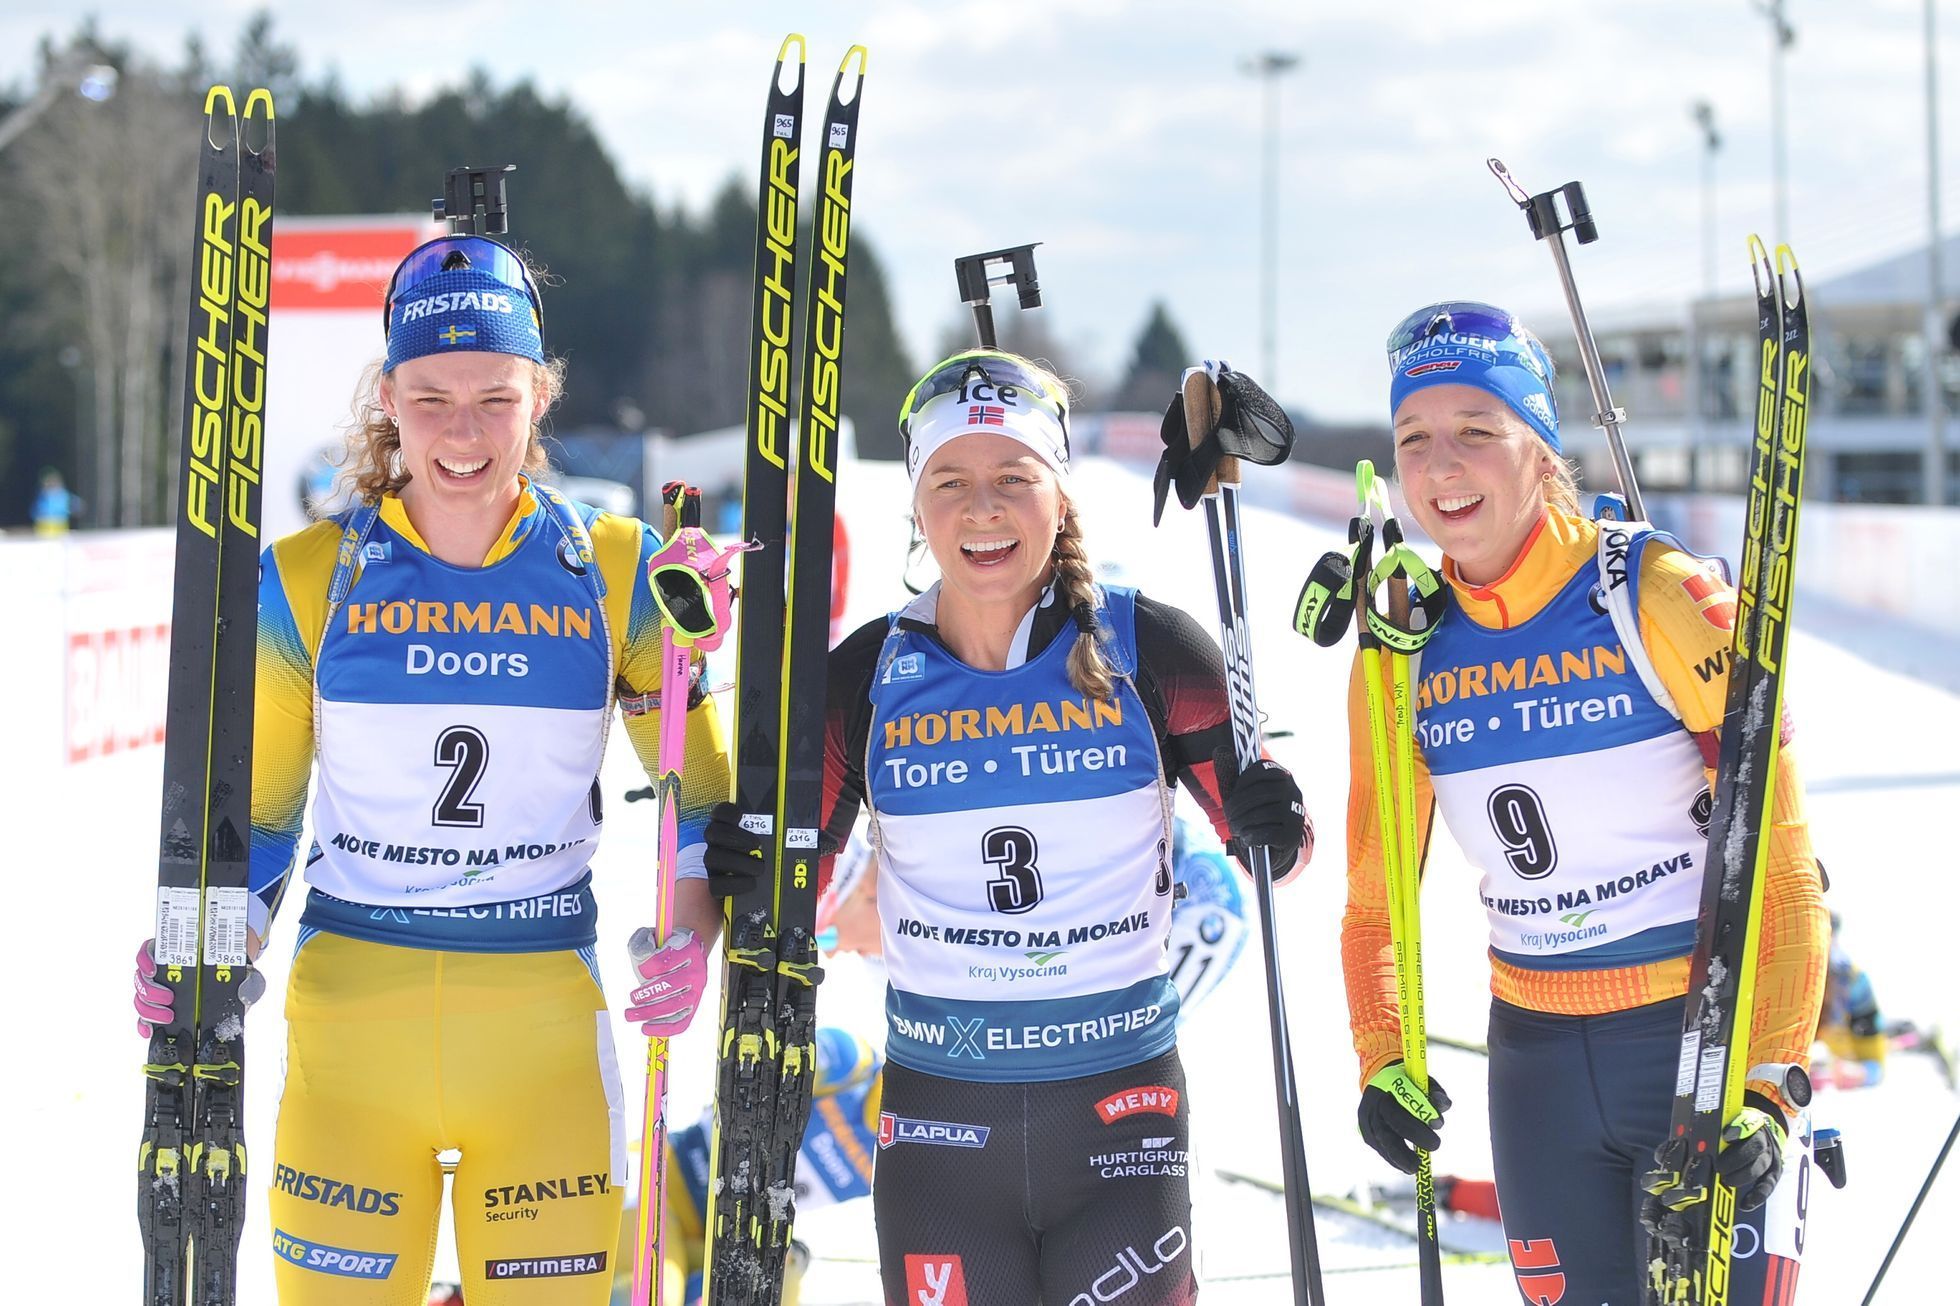 Medailistky závodu s hromadným startem v rámci SP v Novém Městě na Moravě - Hanna Öbergová, Tiril Eckhoffová a Franziska Preussová